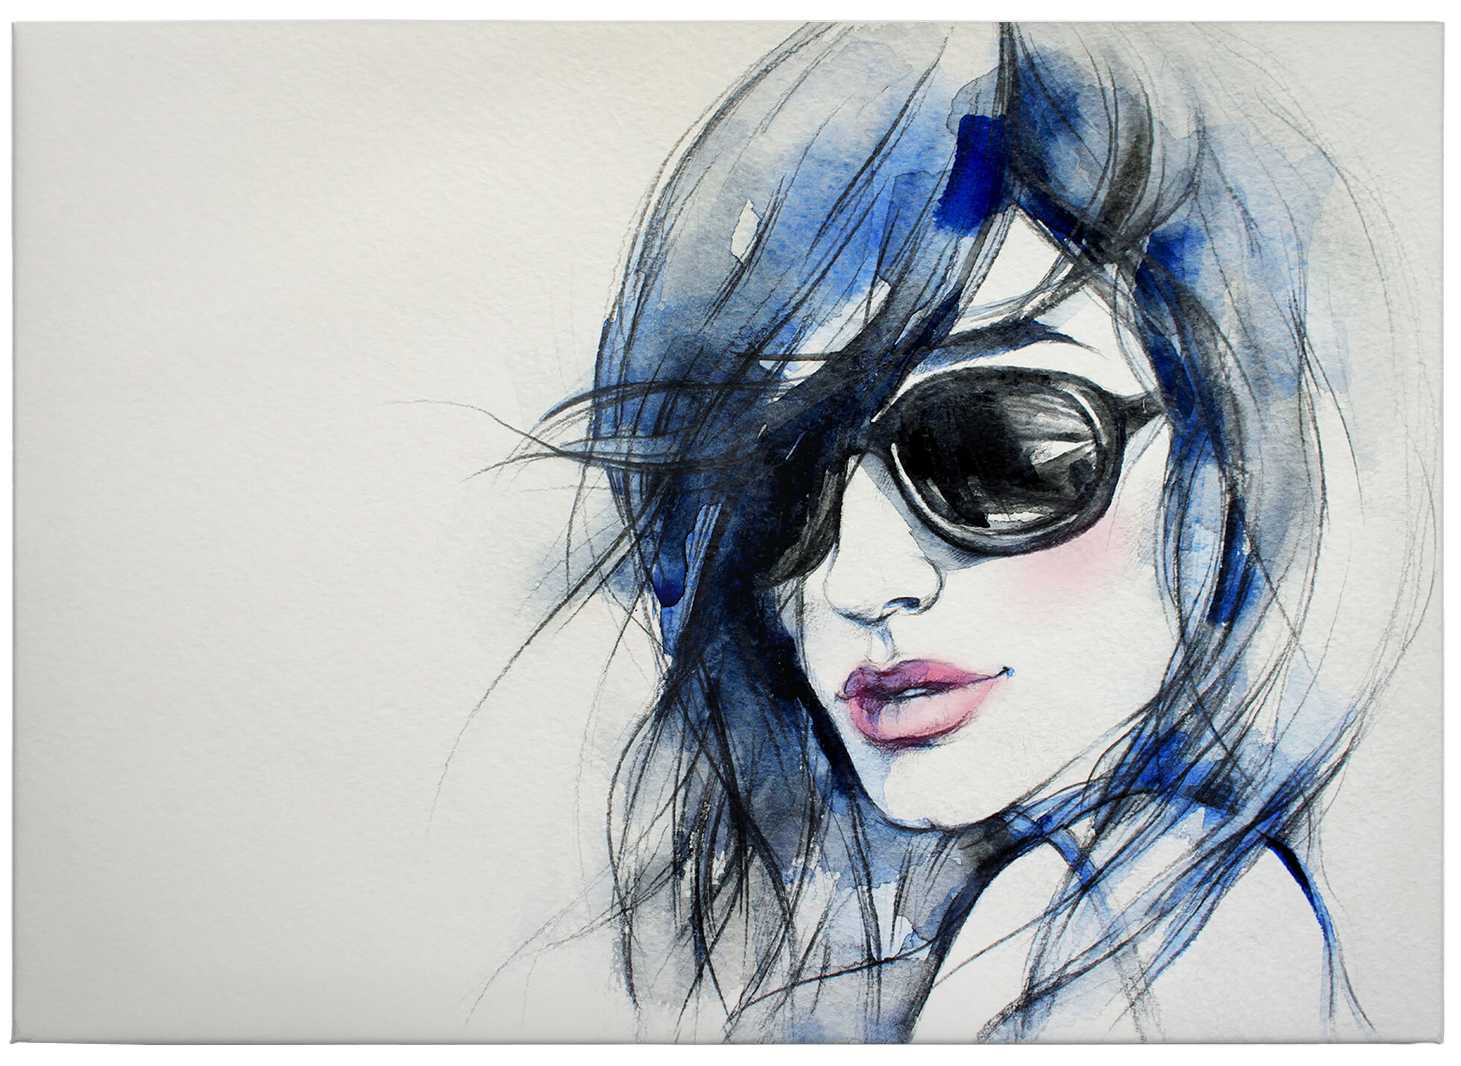             Canvas print watercolour portrait woman with sunglasses
        